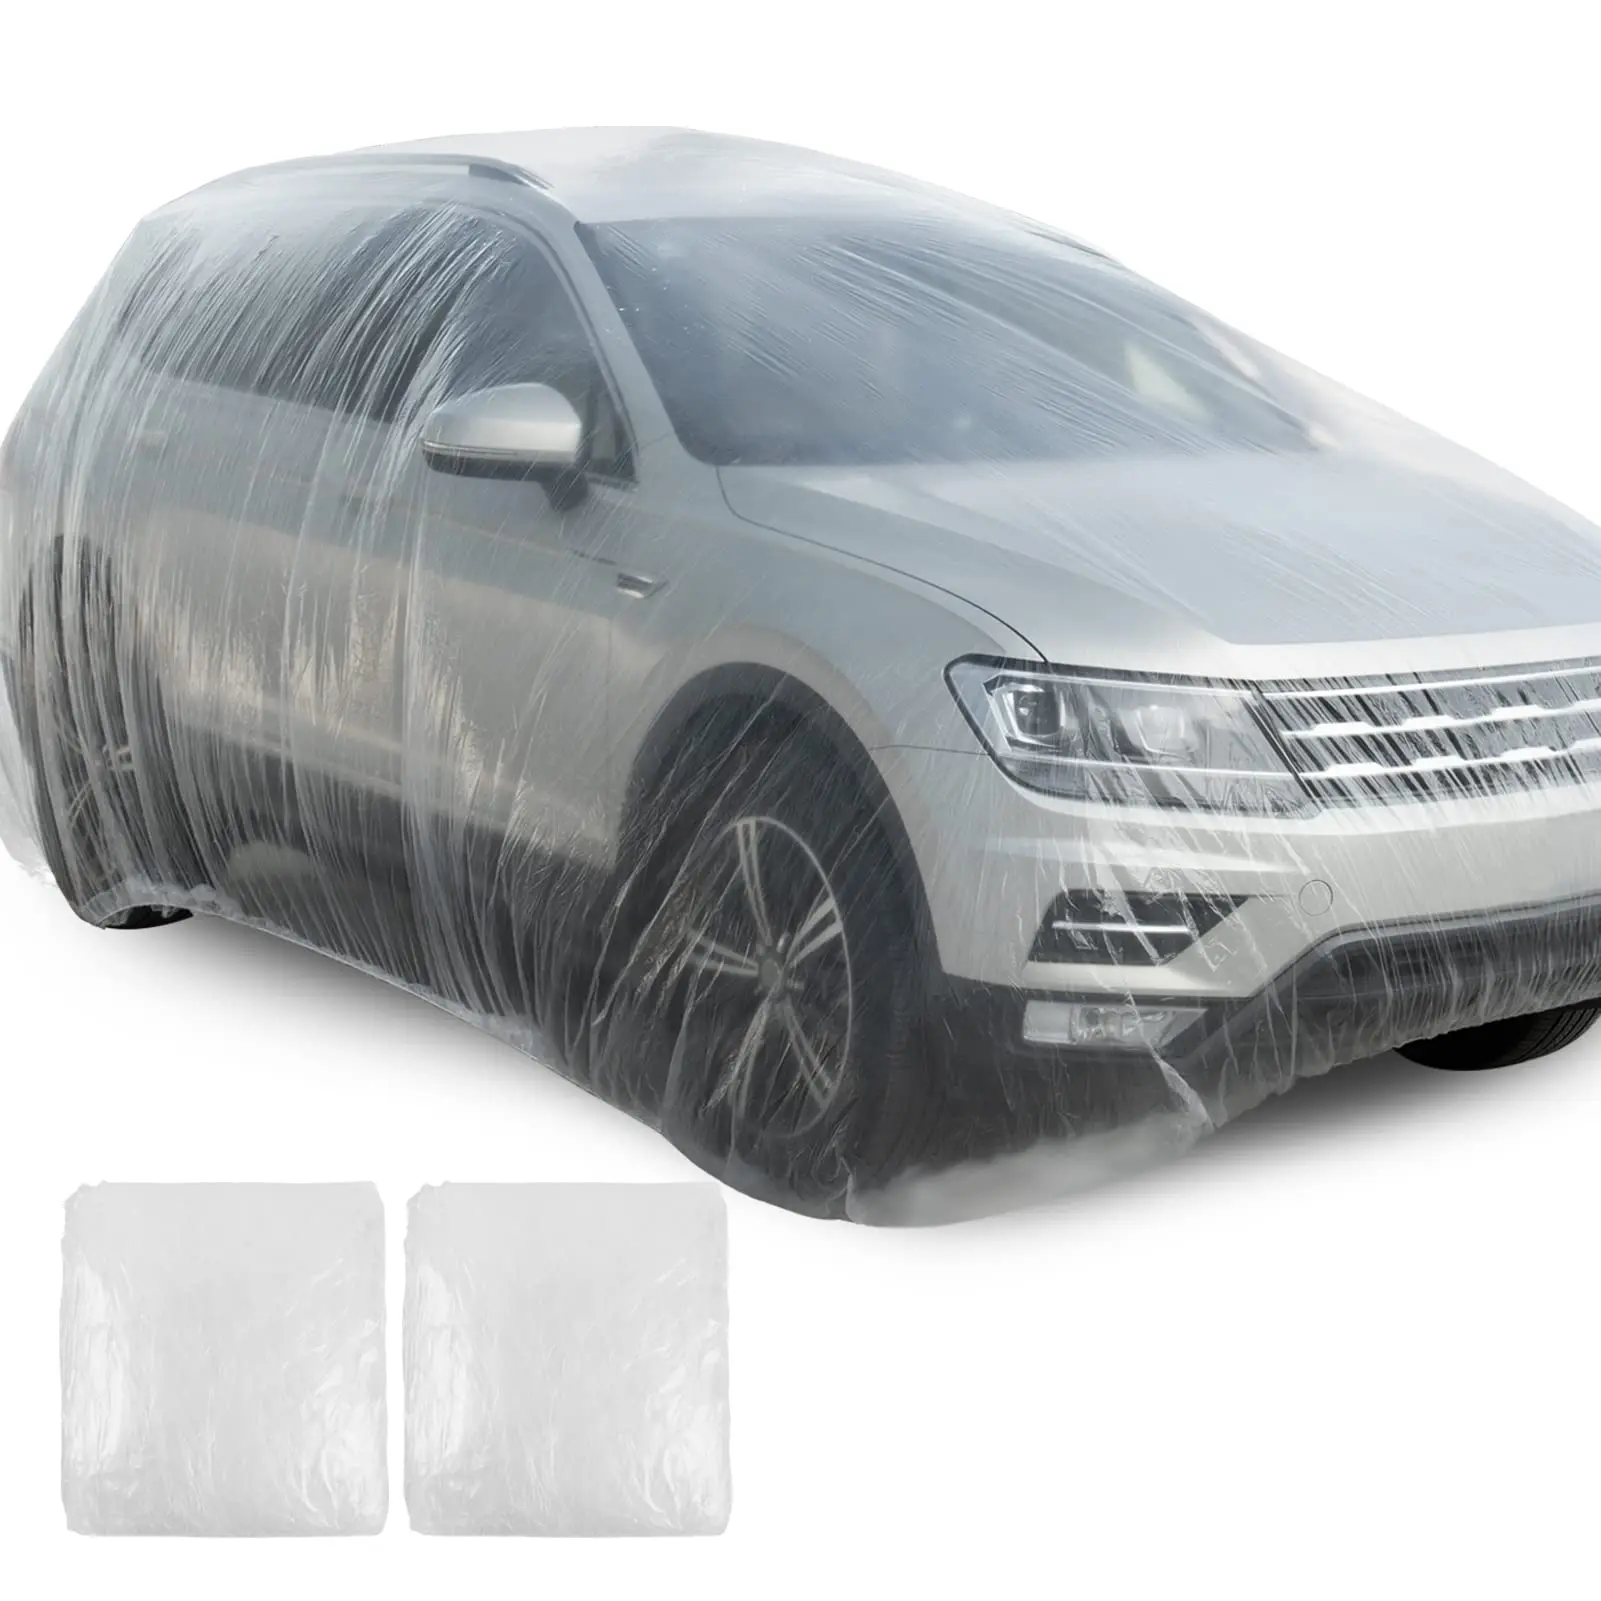 plastico protector coche - Cómo protejo el plástico exterior de mi coche